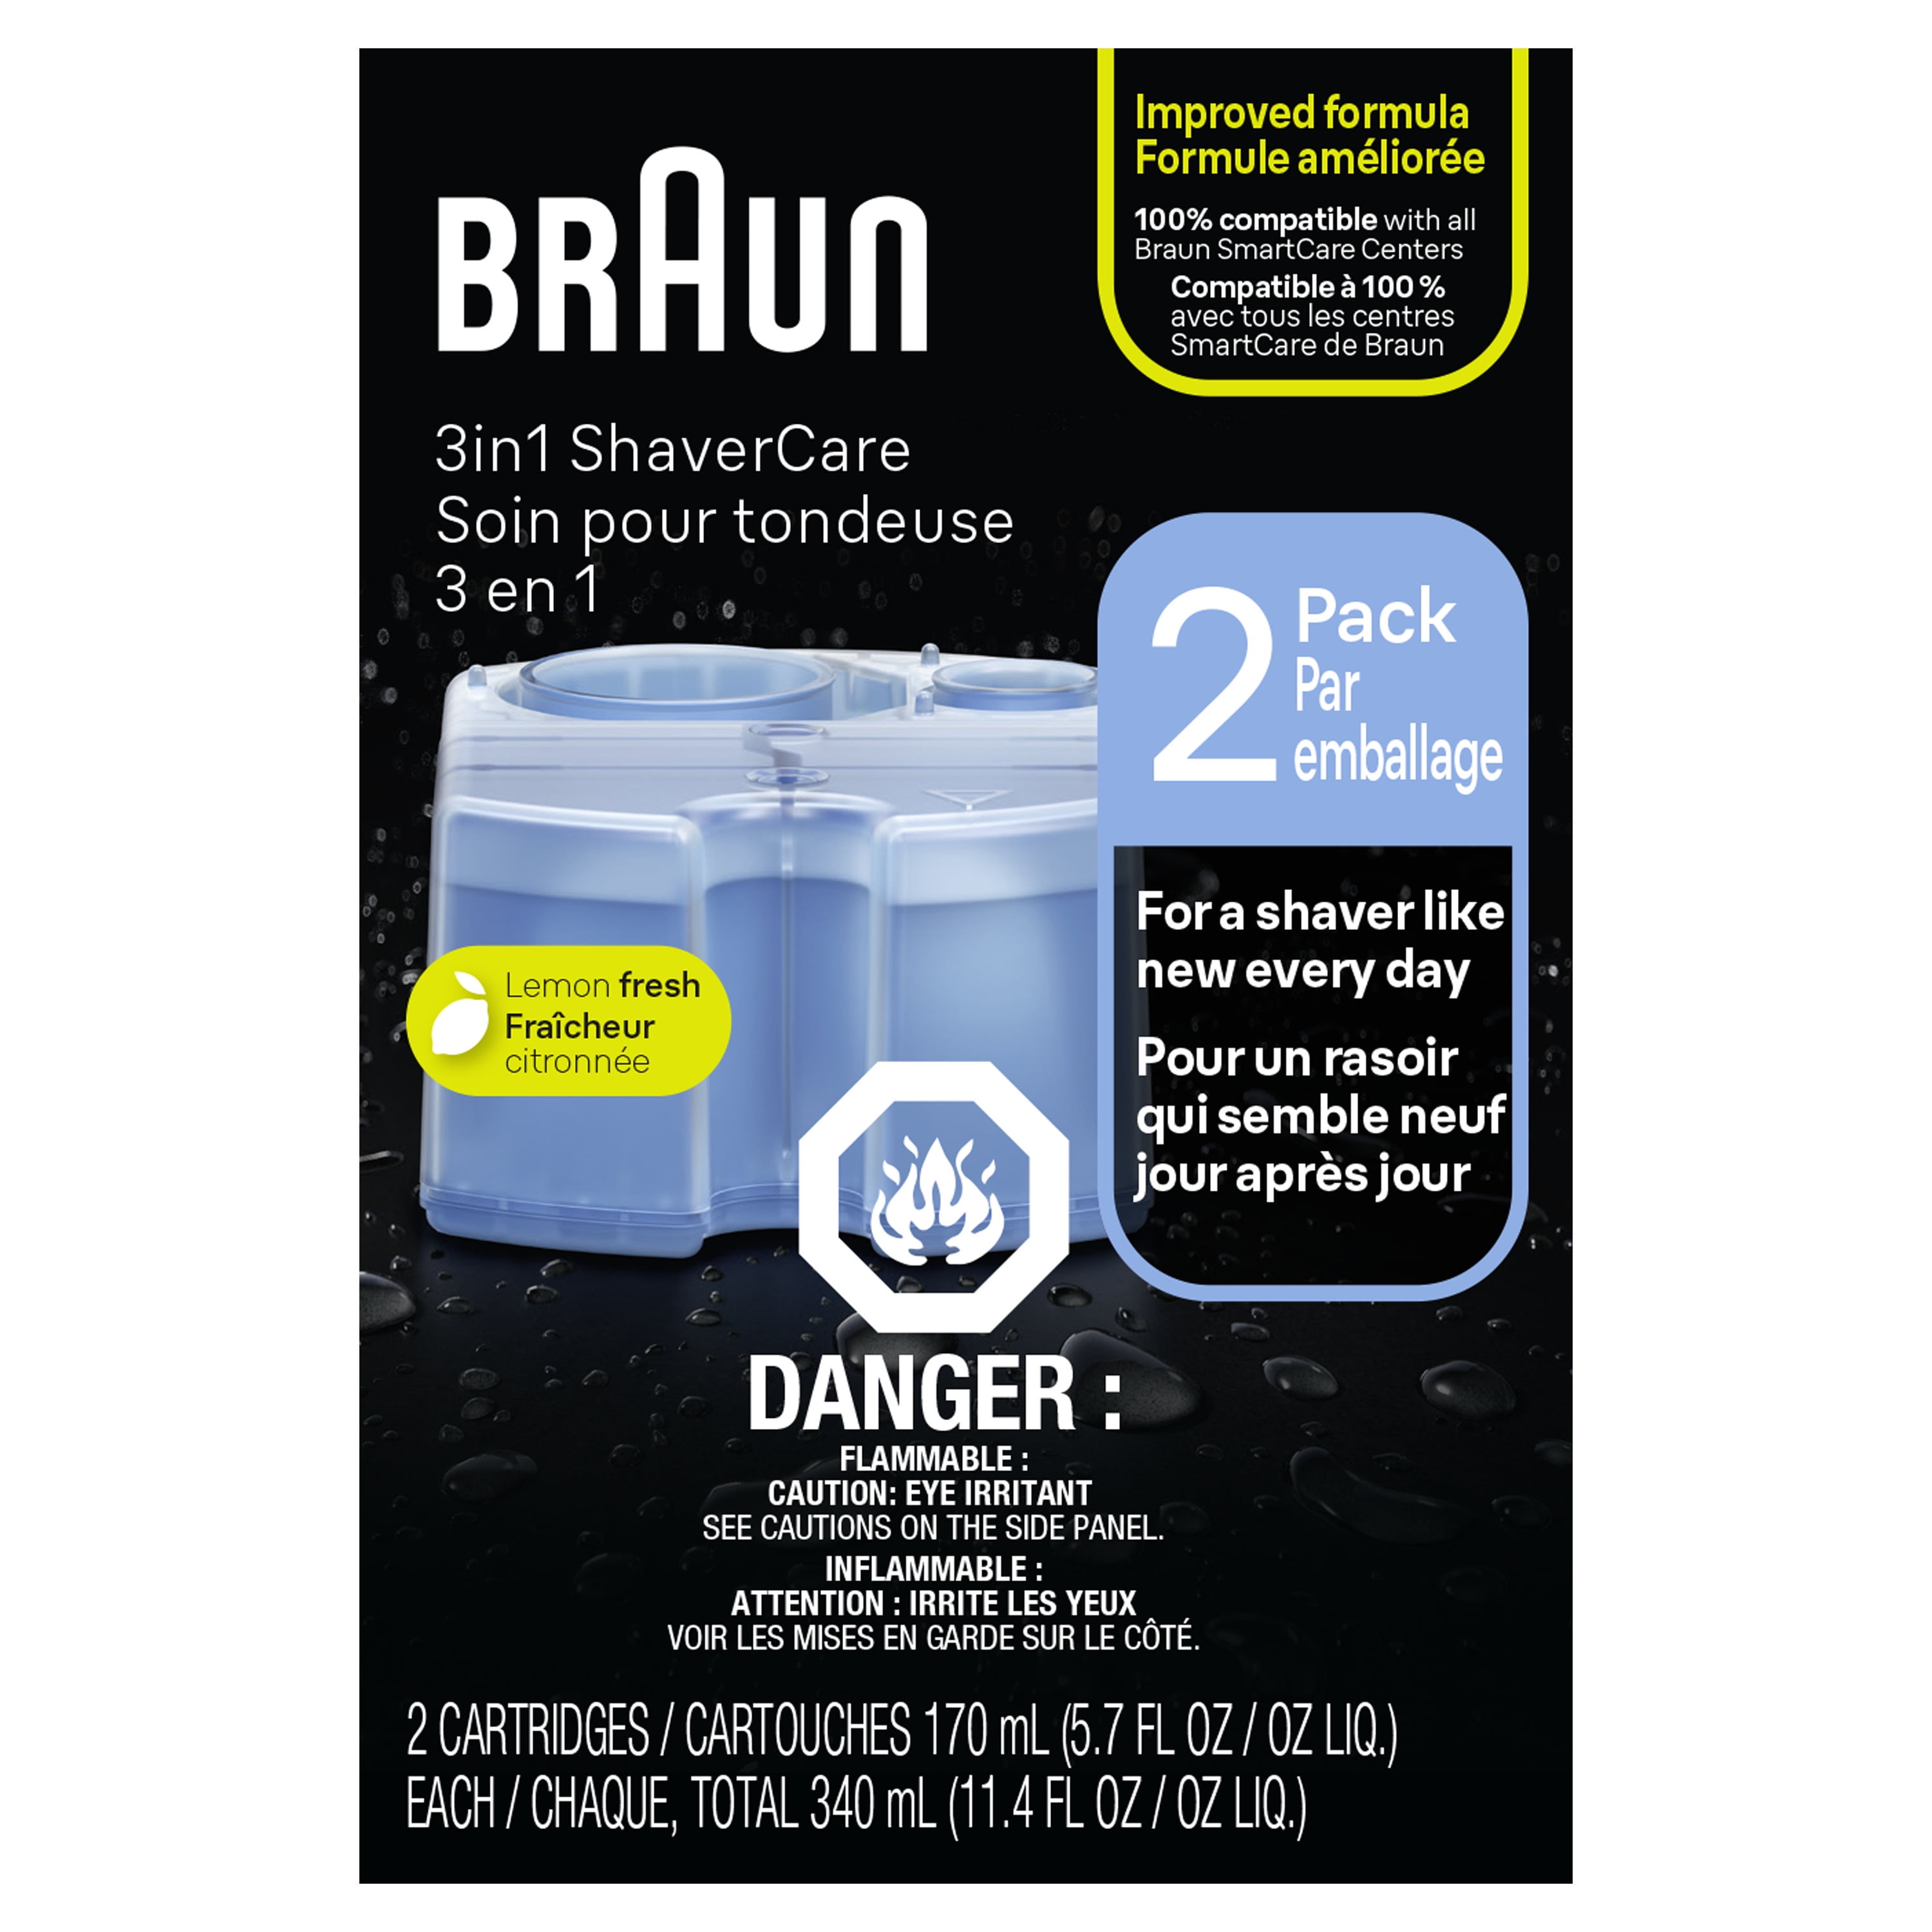 Braun CCR 5+1 Reinigungskartuschen - Clean & Renew bei